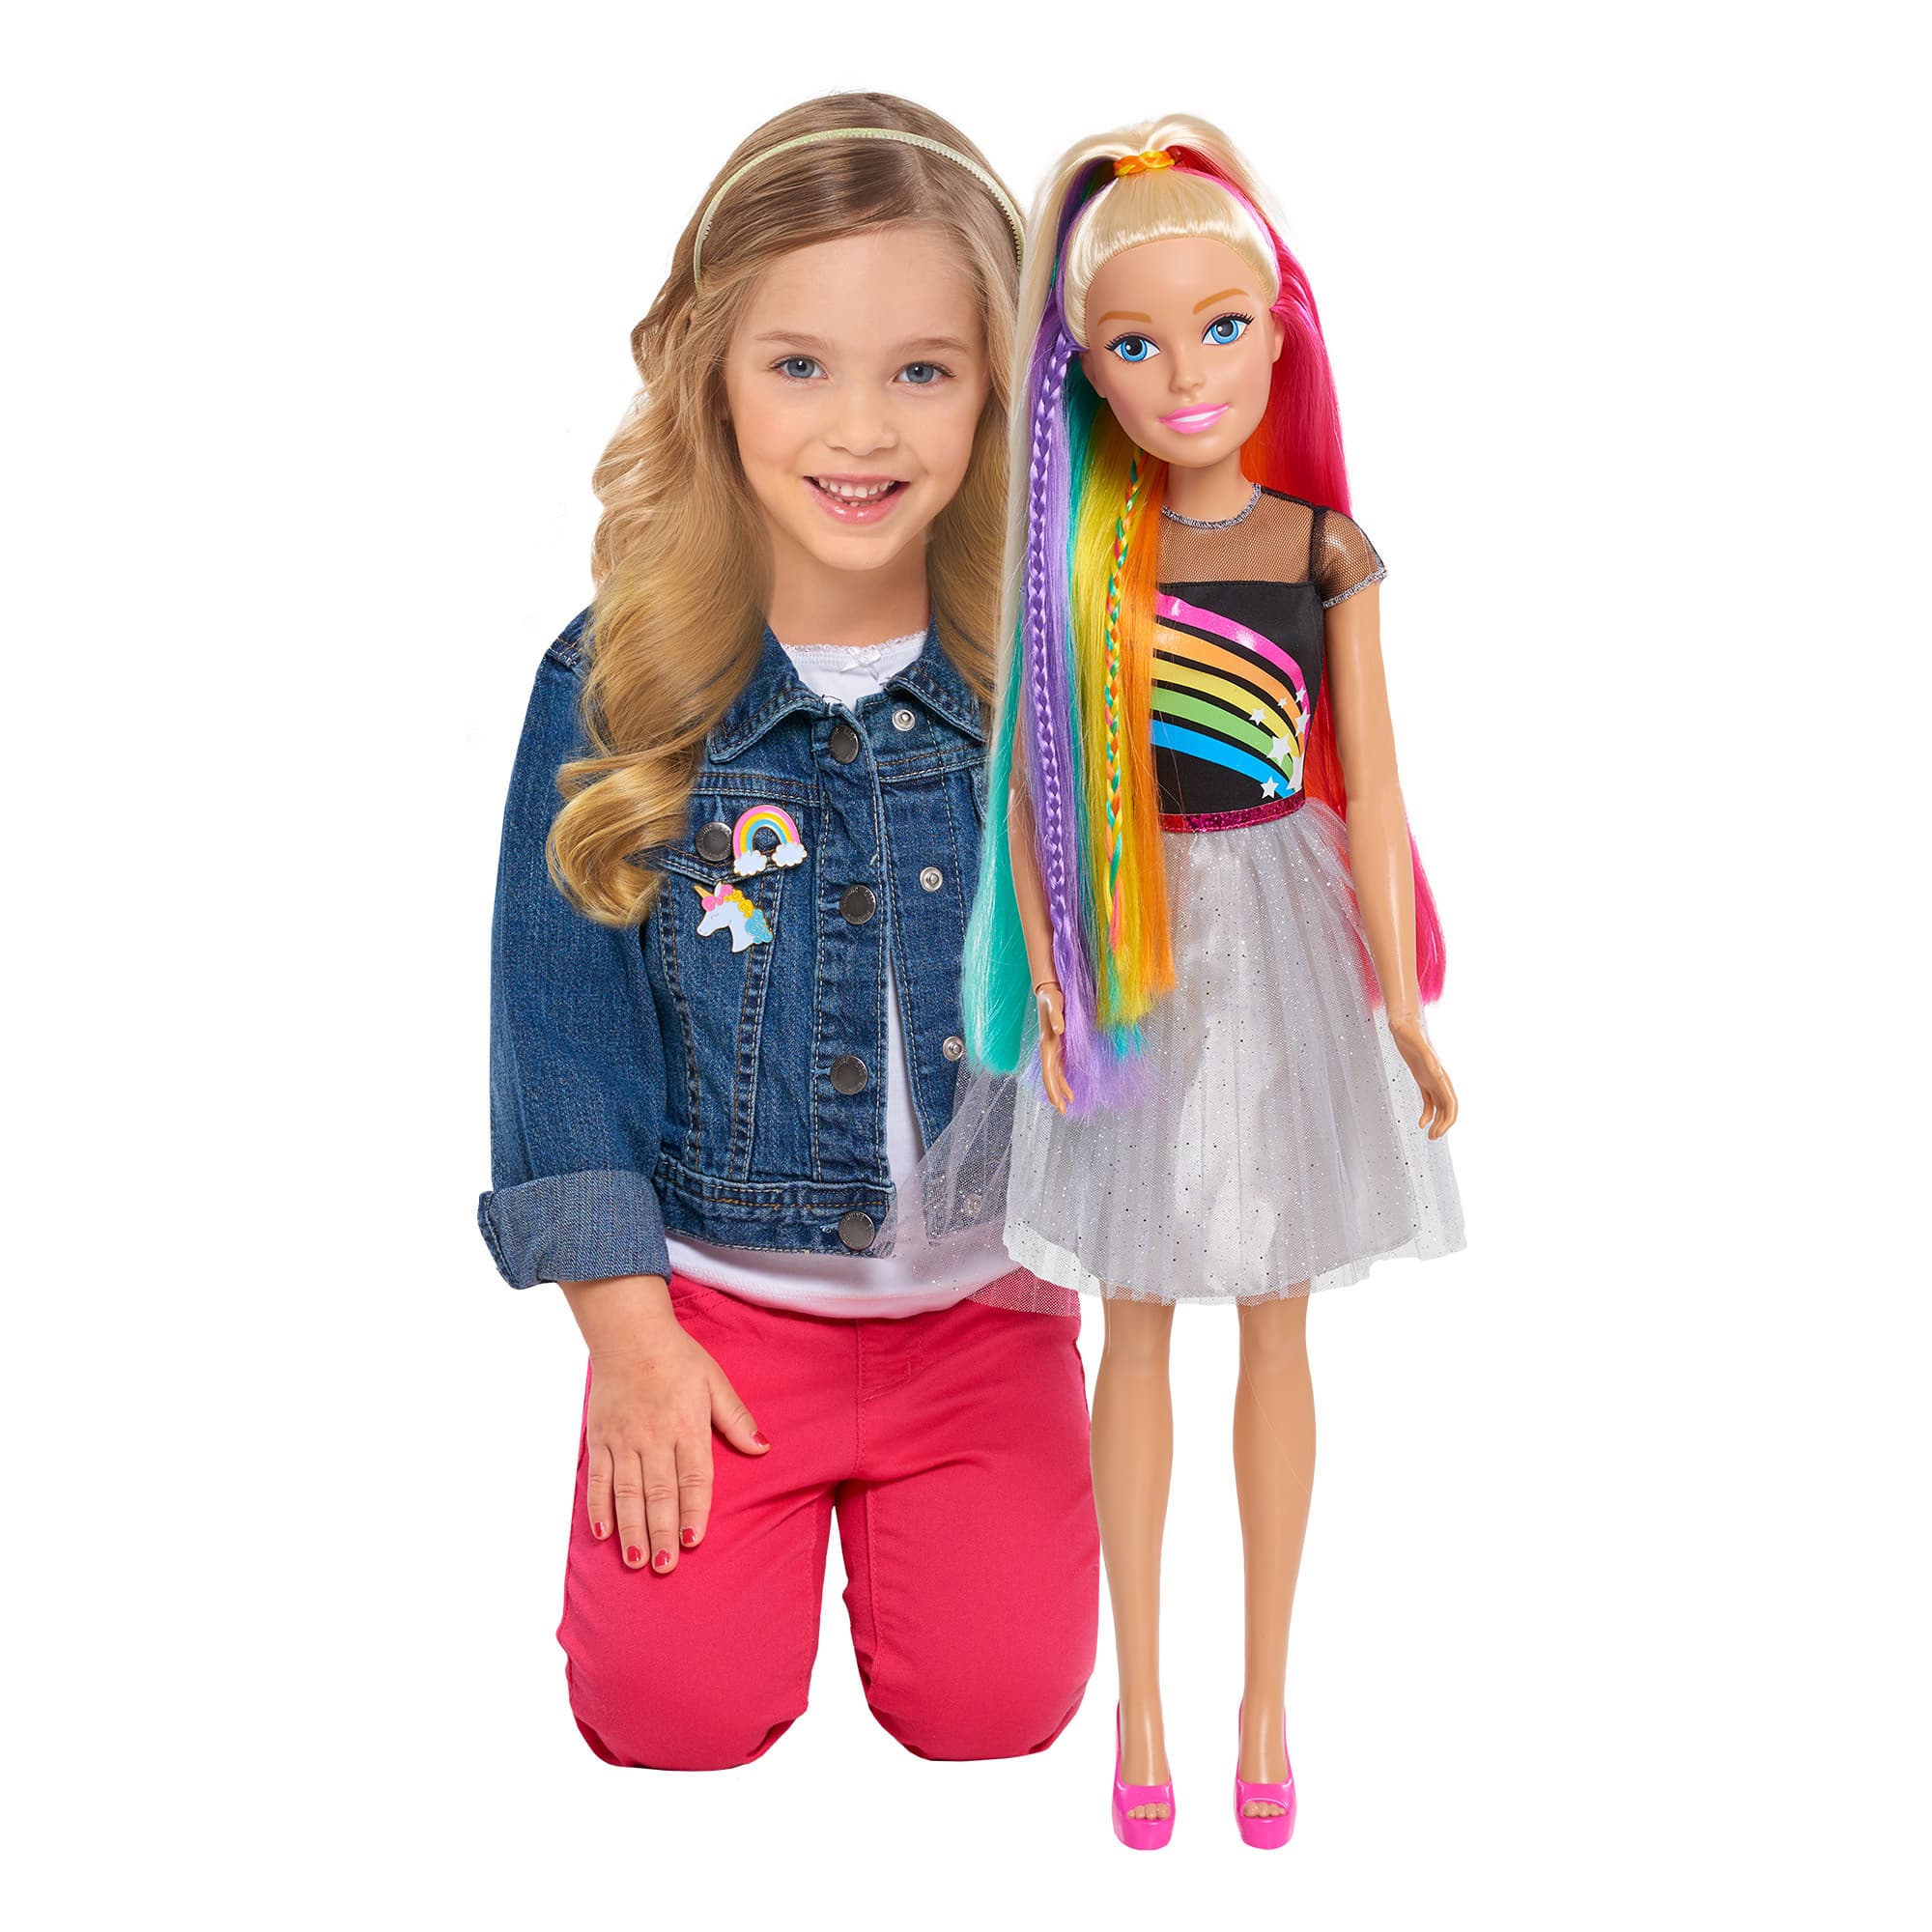 Barbie - Rainbow Hair 28" Doll